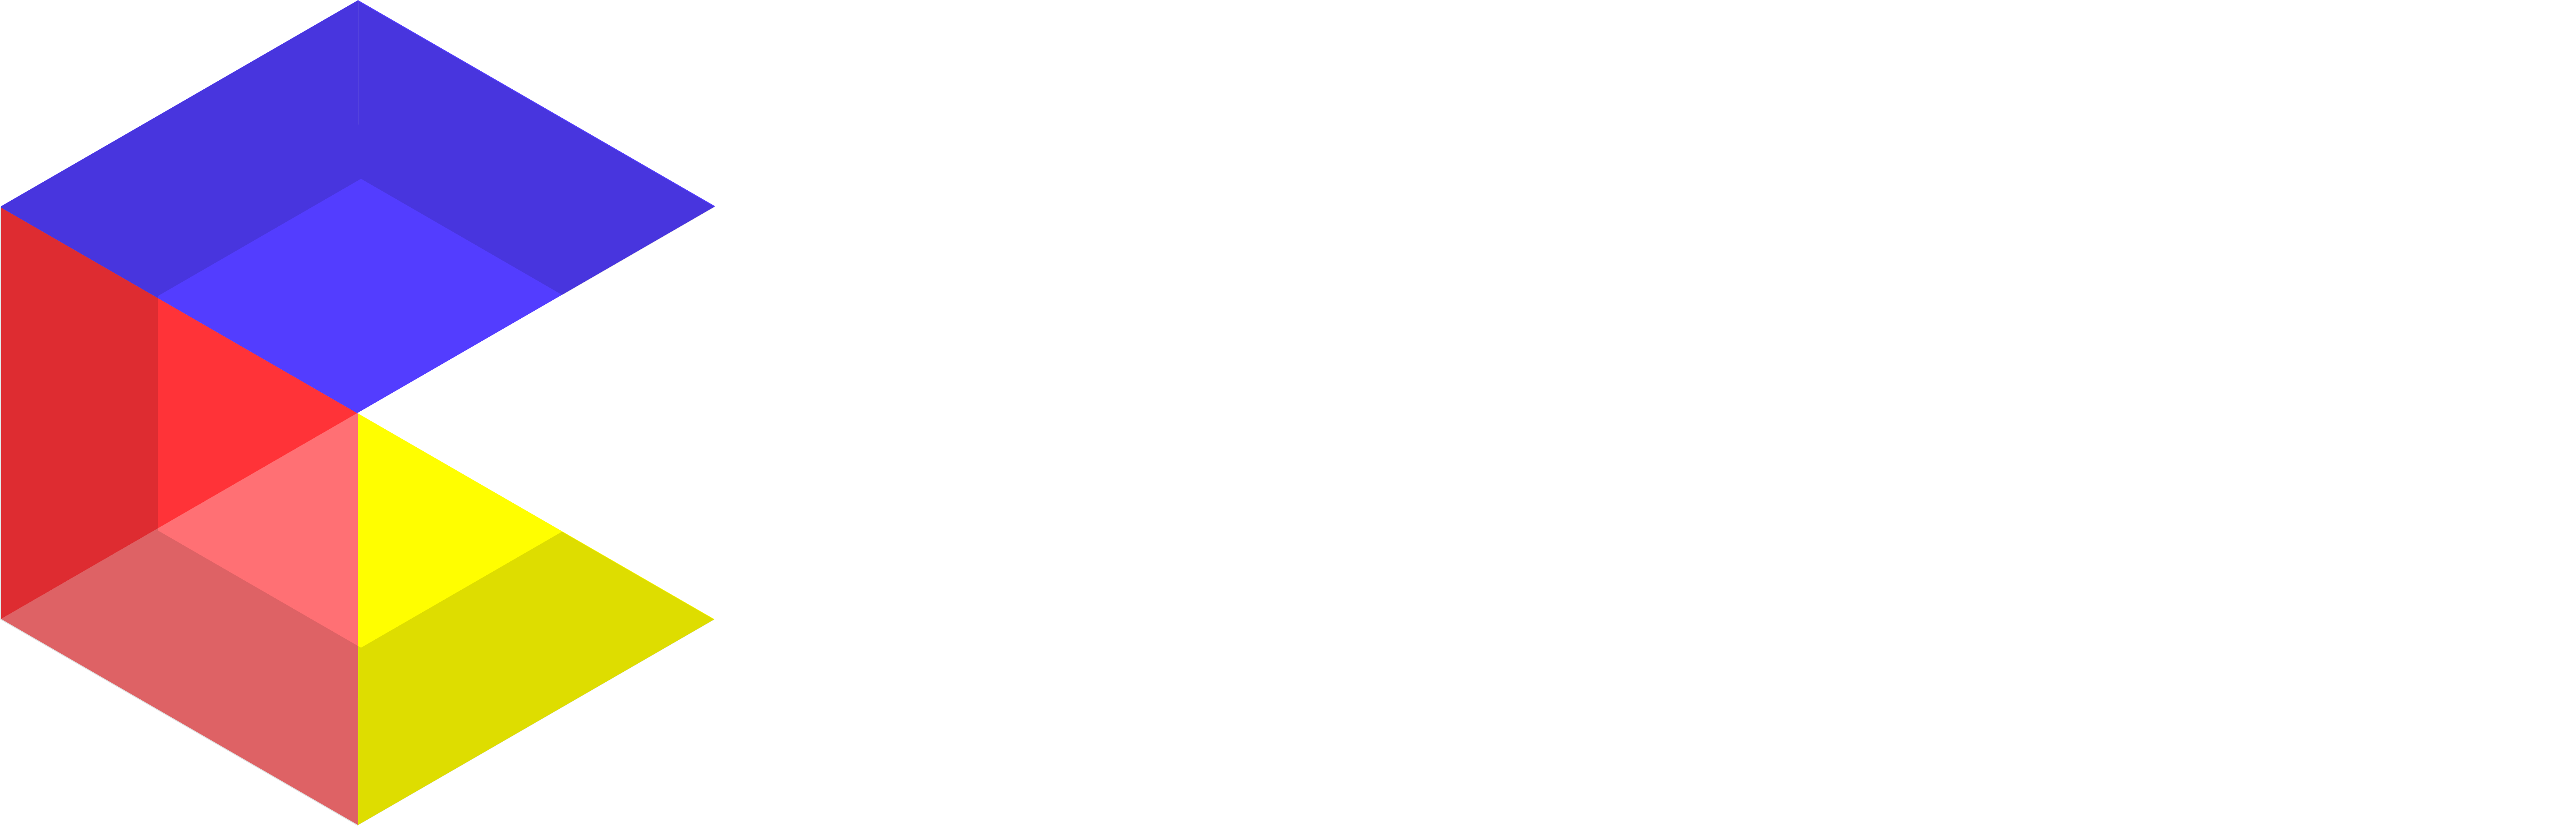 C-Box Hokkaido